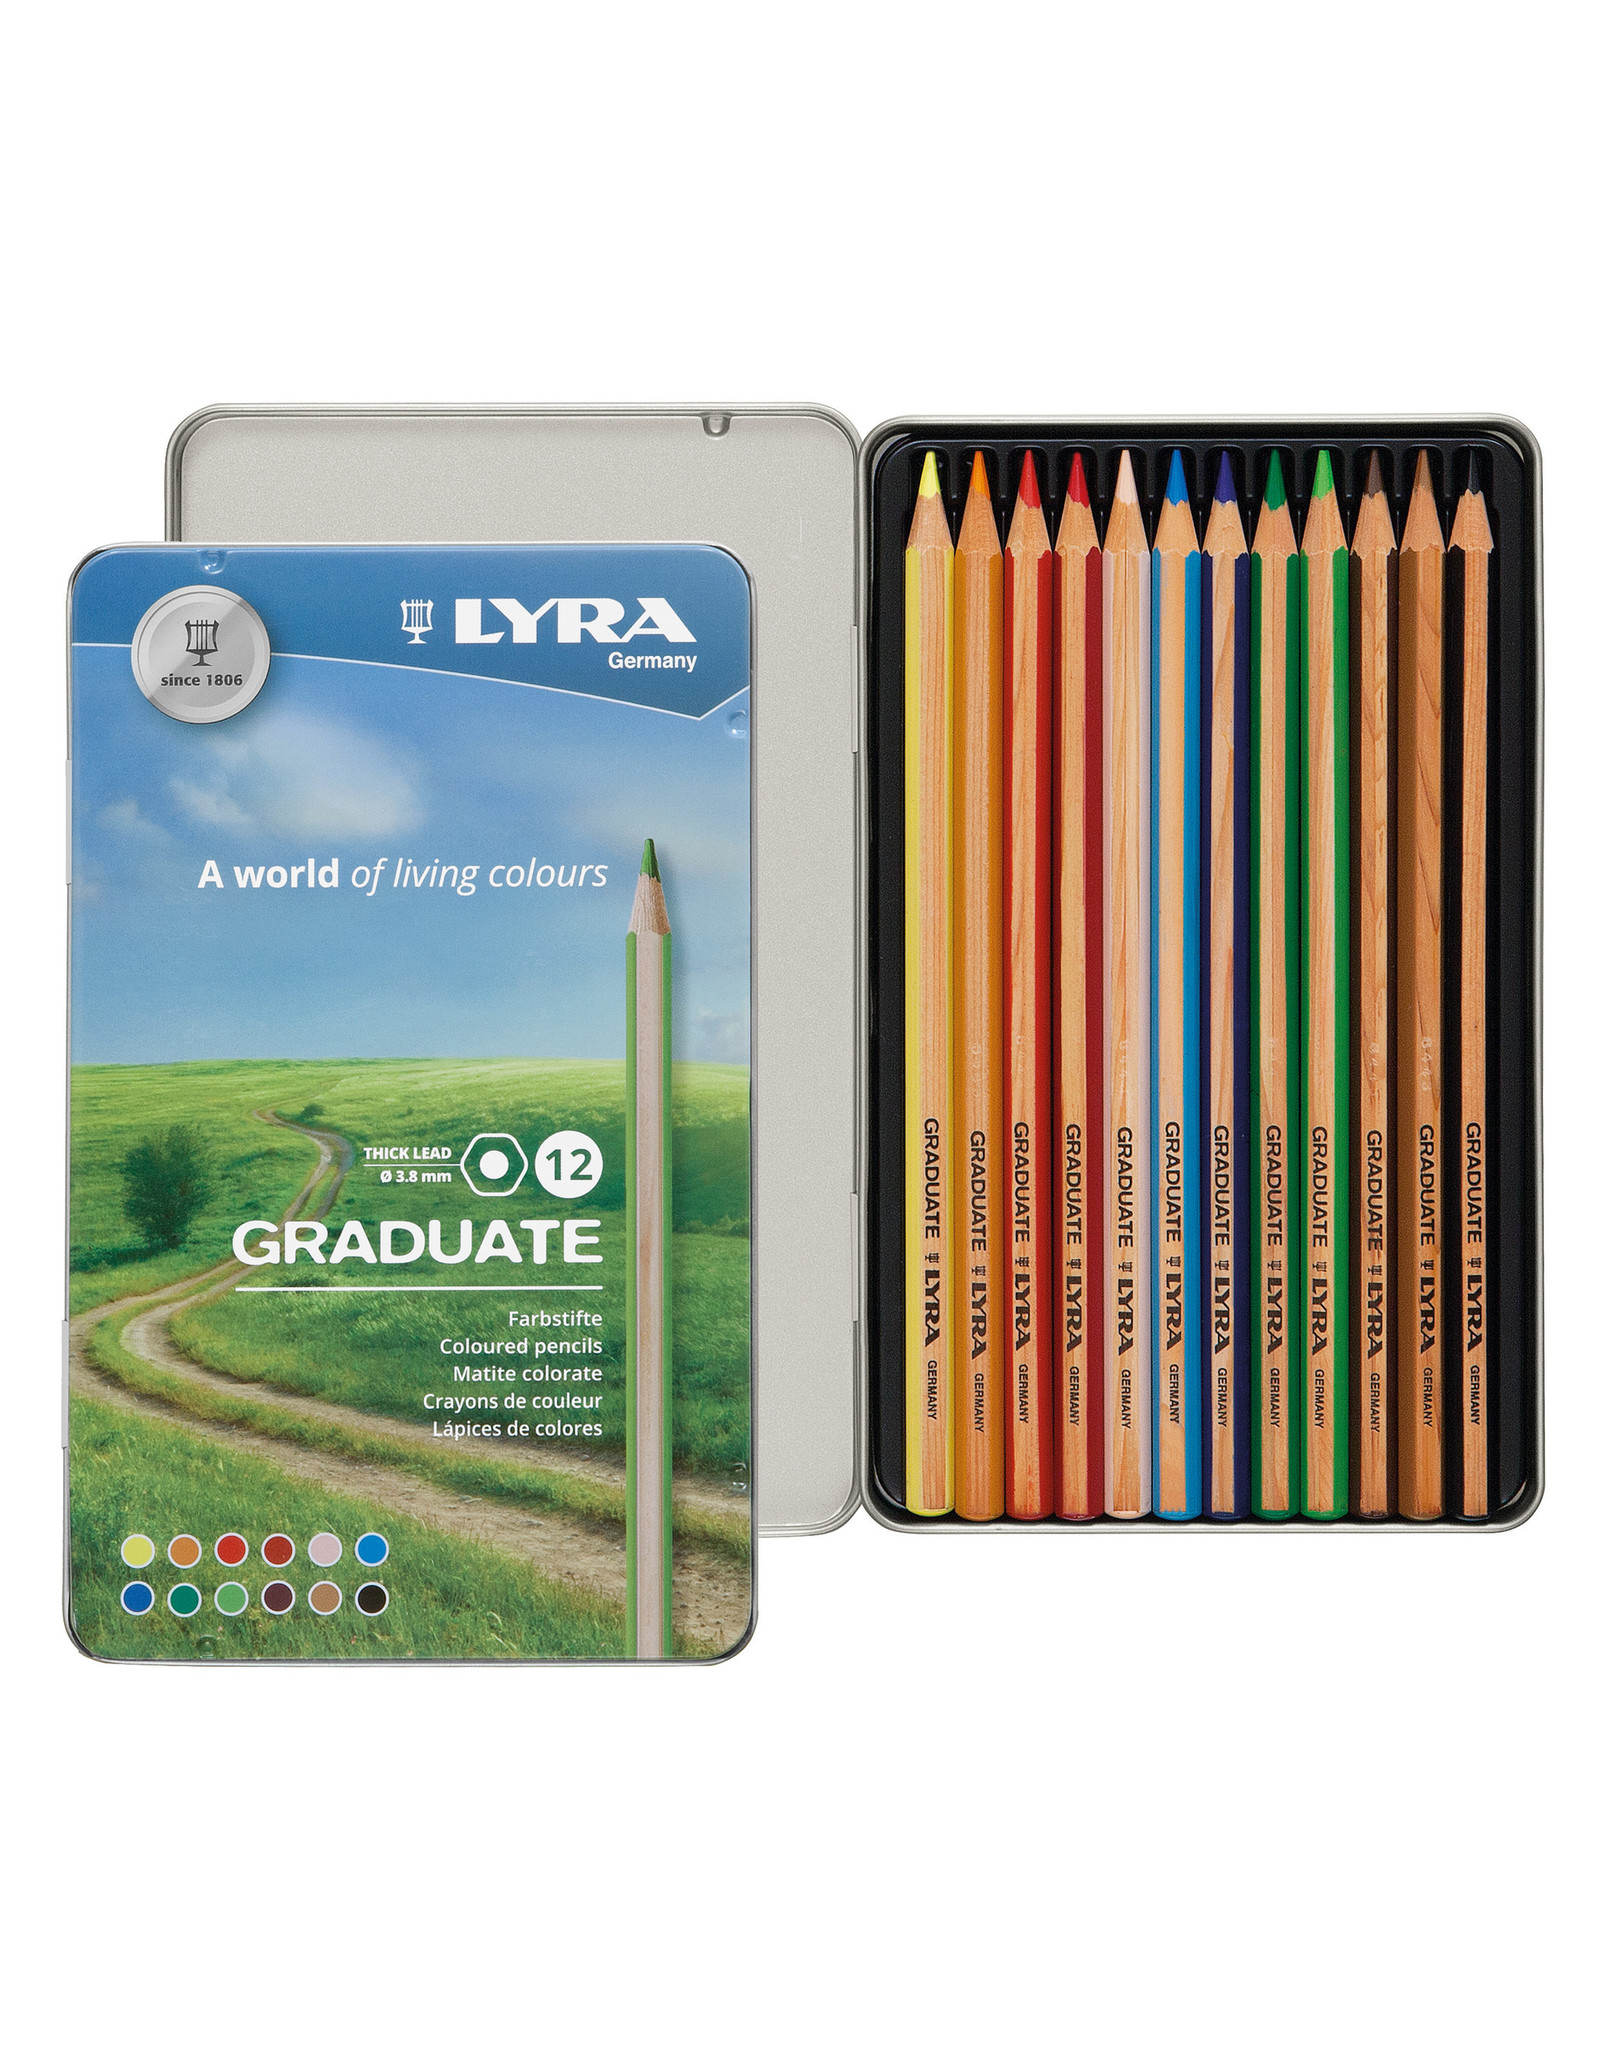 LYRA Lyra Graduate Colored Pencils, Tin Set of 12